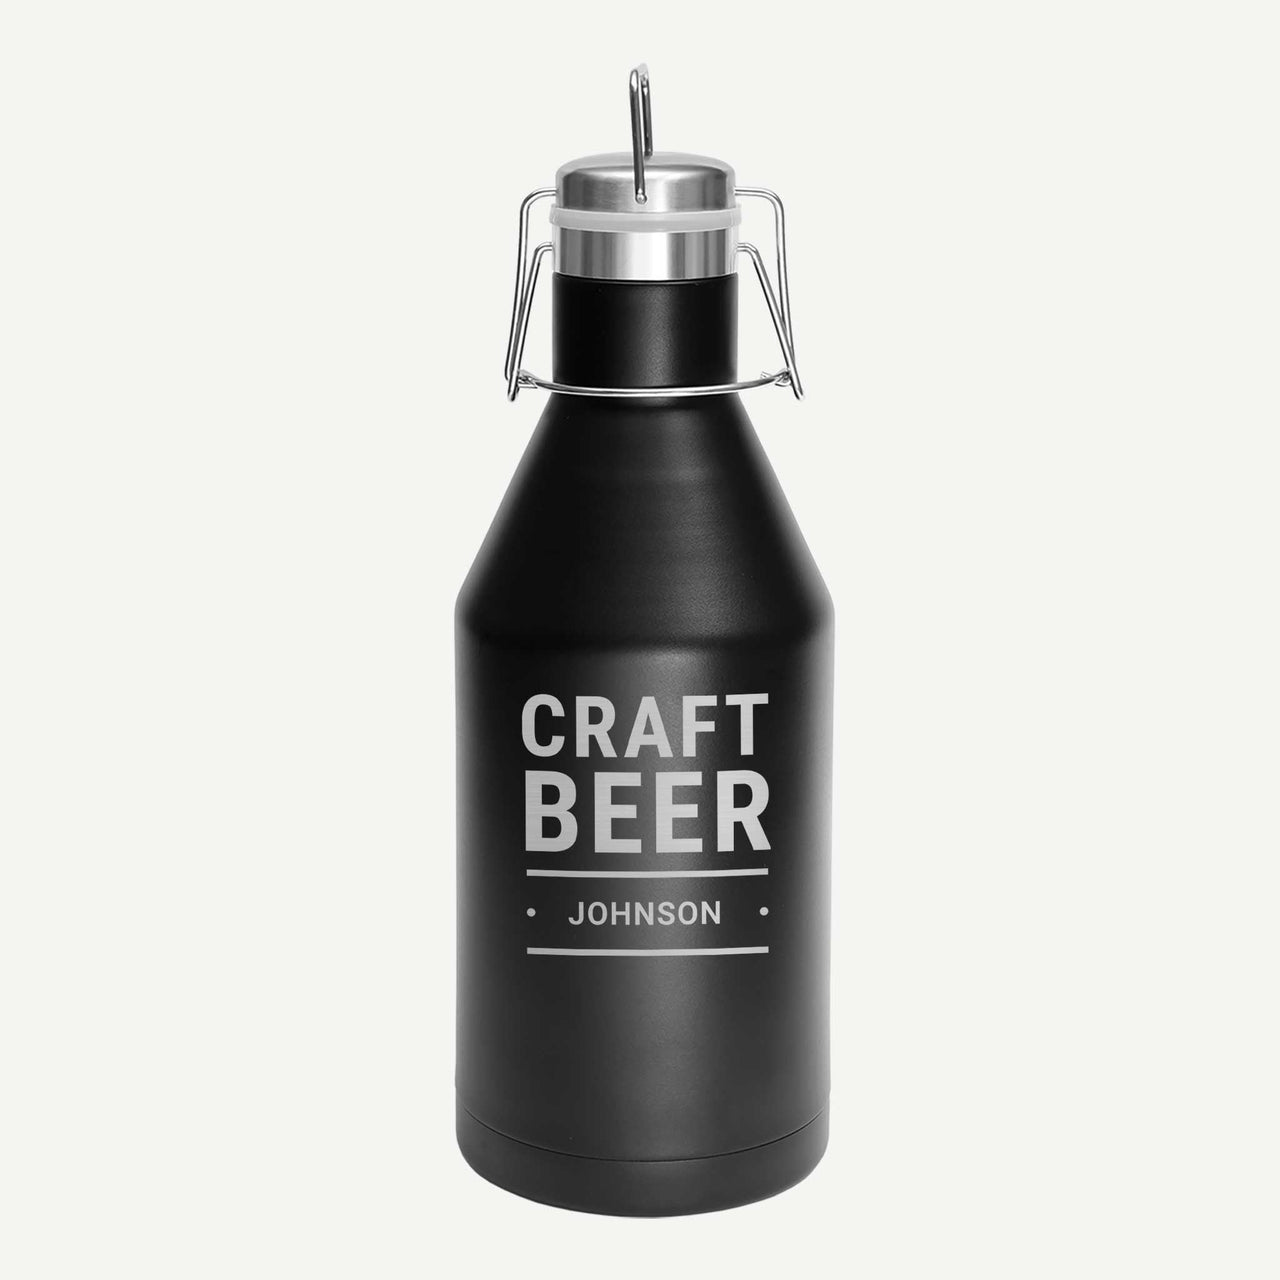 Personalized Steel Beer Growler - Craft Beer - Mod Peach